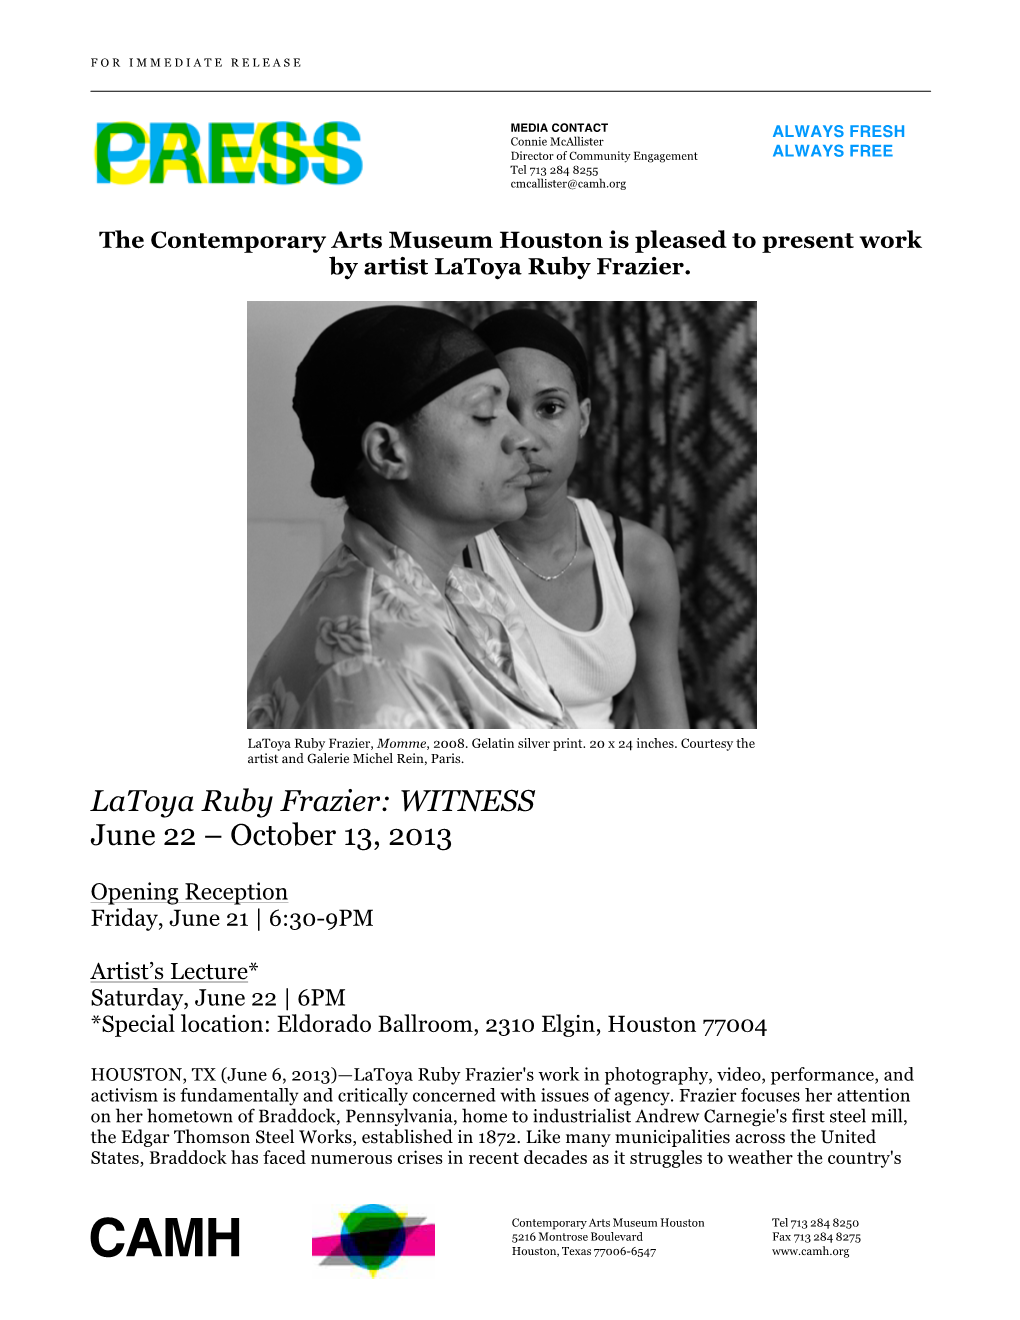 Latoya Ruby Fraizer | WITNESS